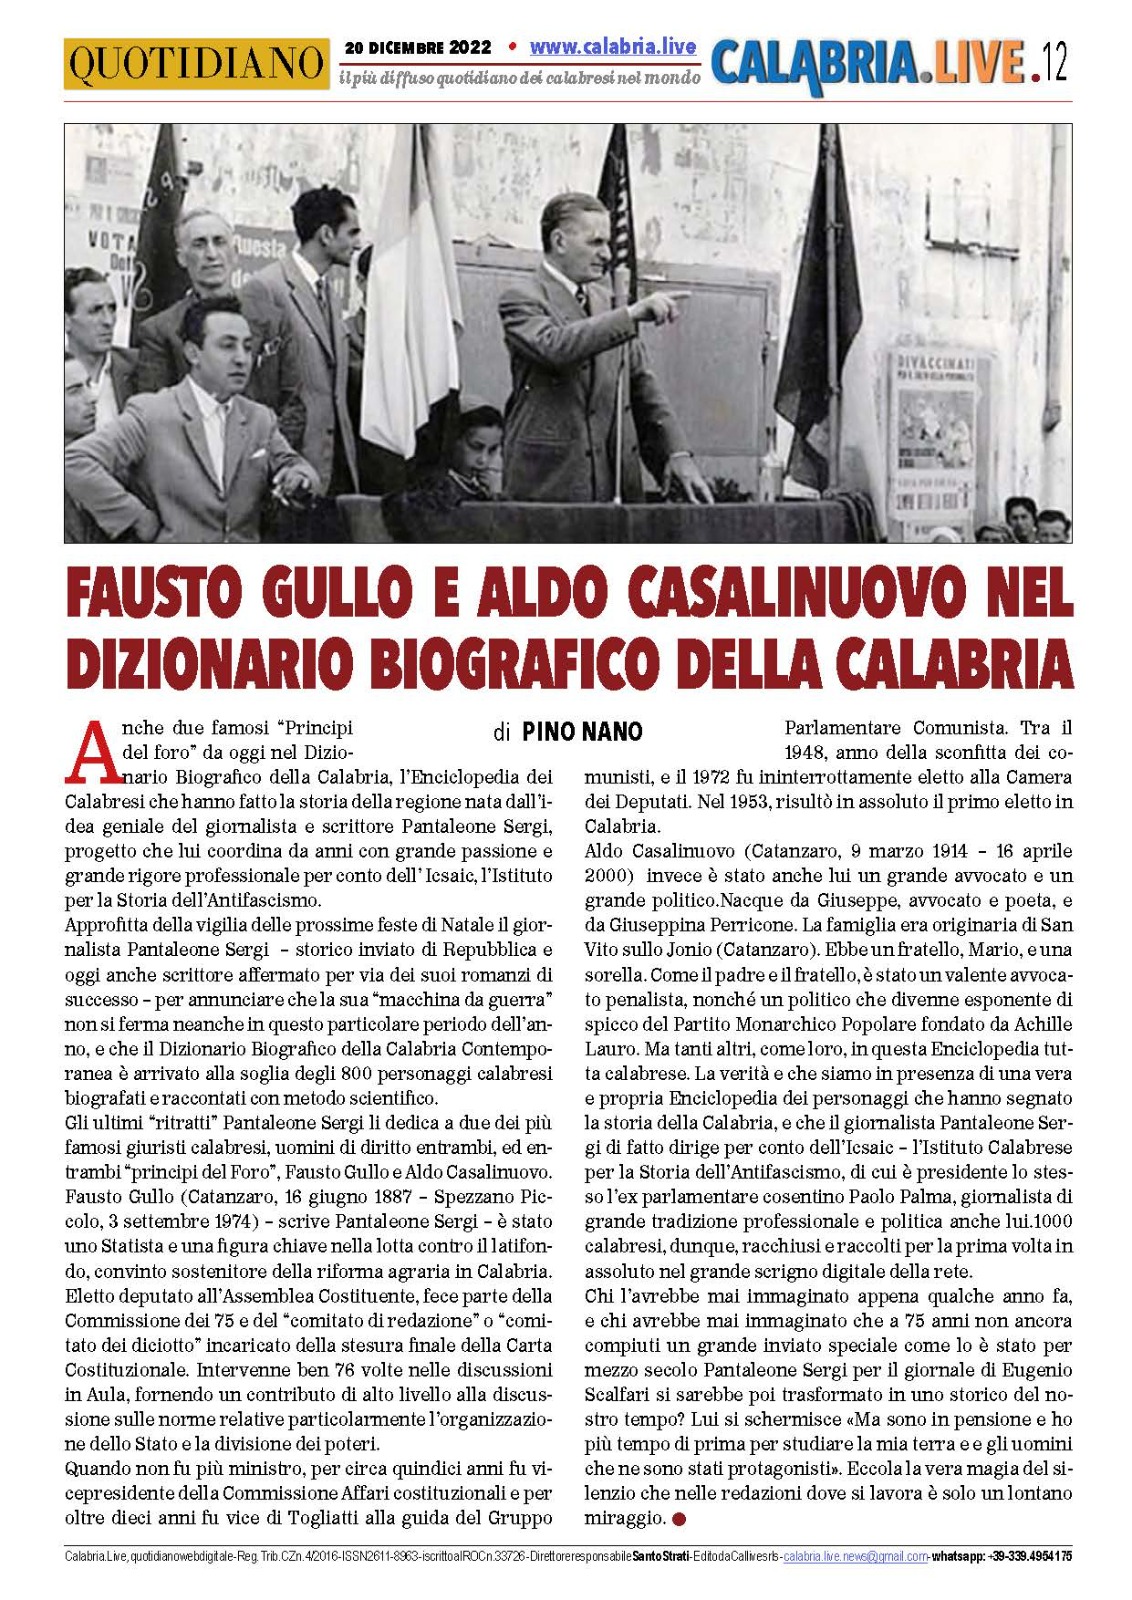 Il nostro “Dizionario” in un articolo di Pino Nano su Calabria Live